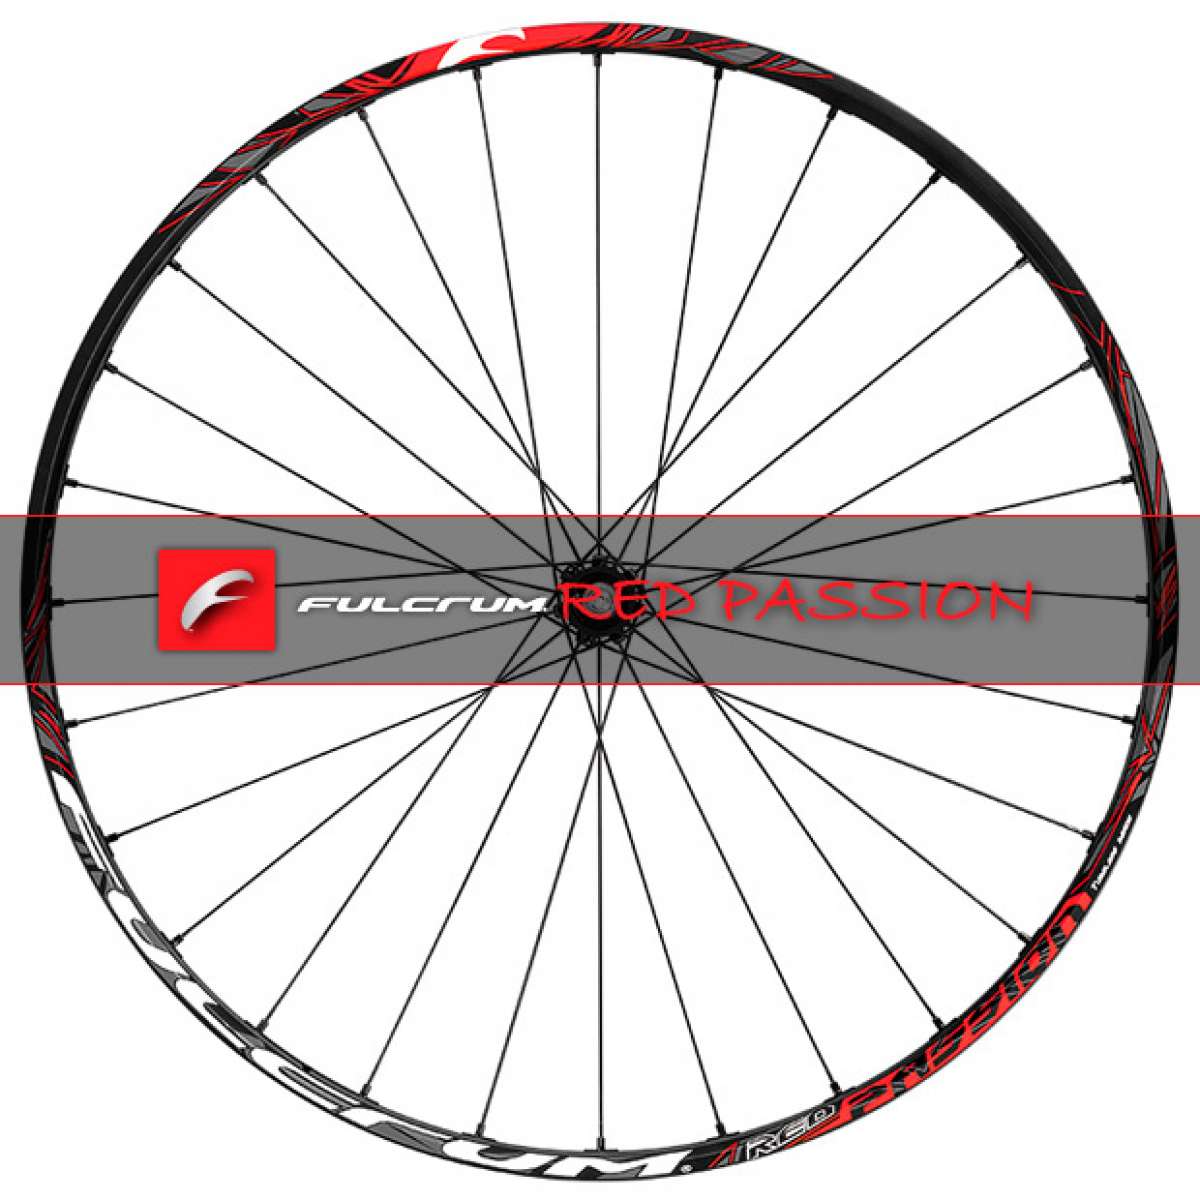 Fulcrum Red Passion, las nuevas ruedas XC de aluminio de Fulcrum